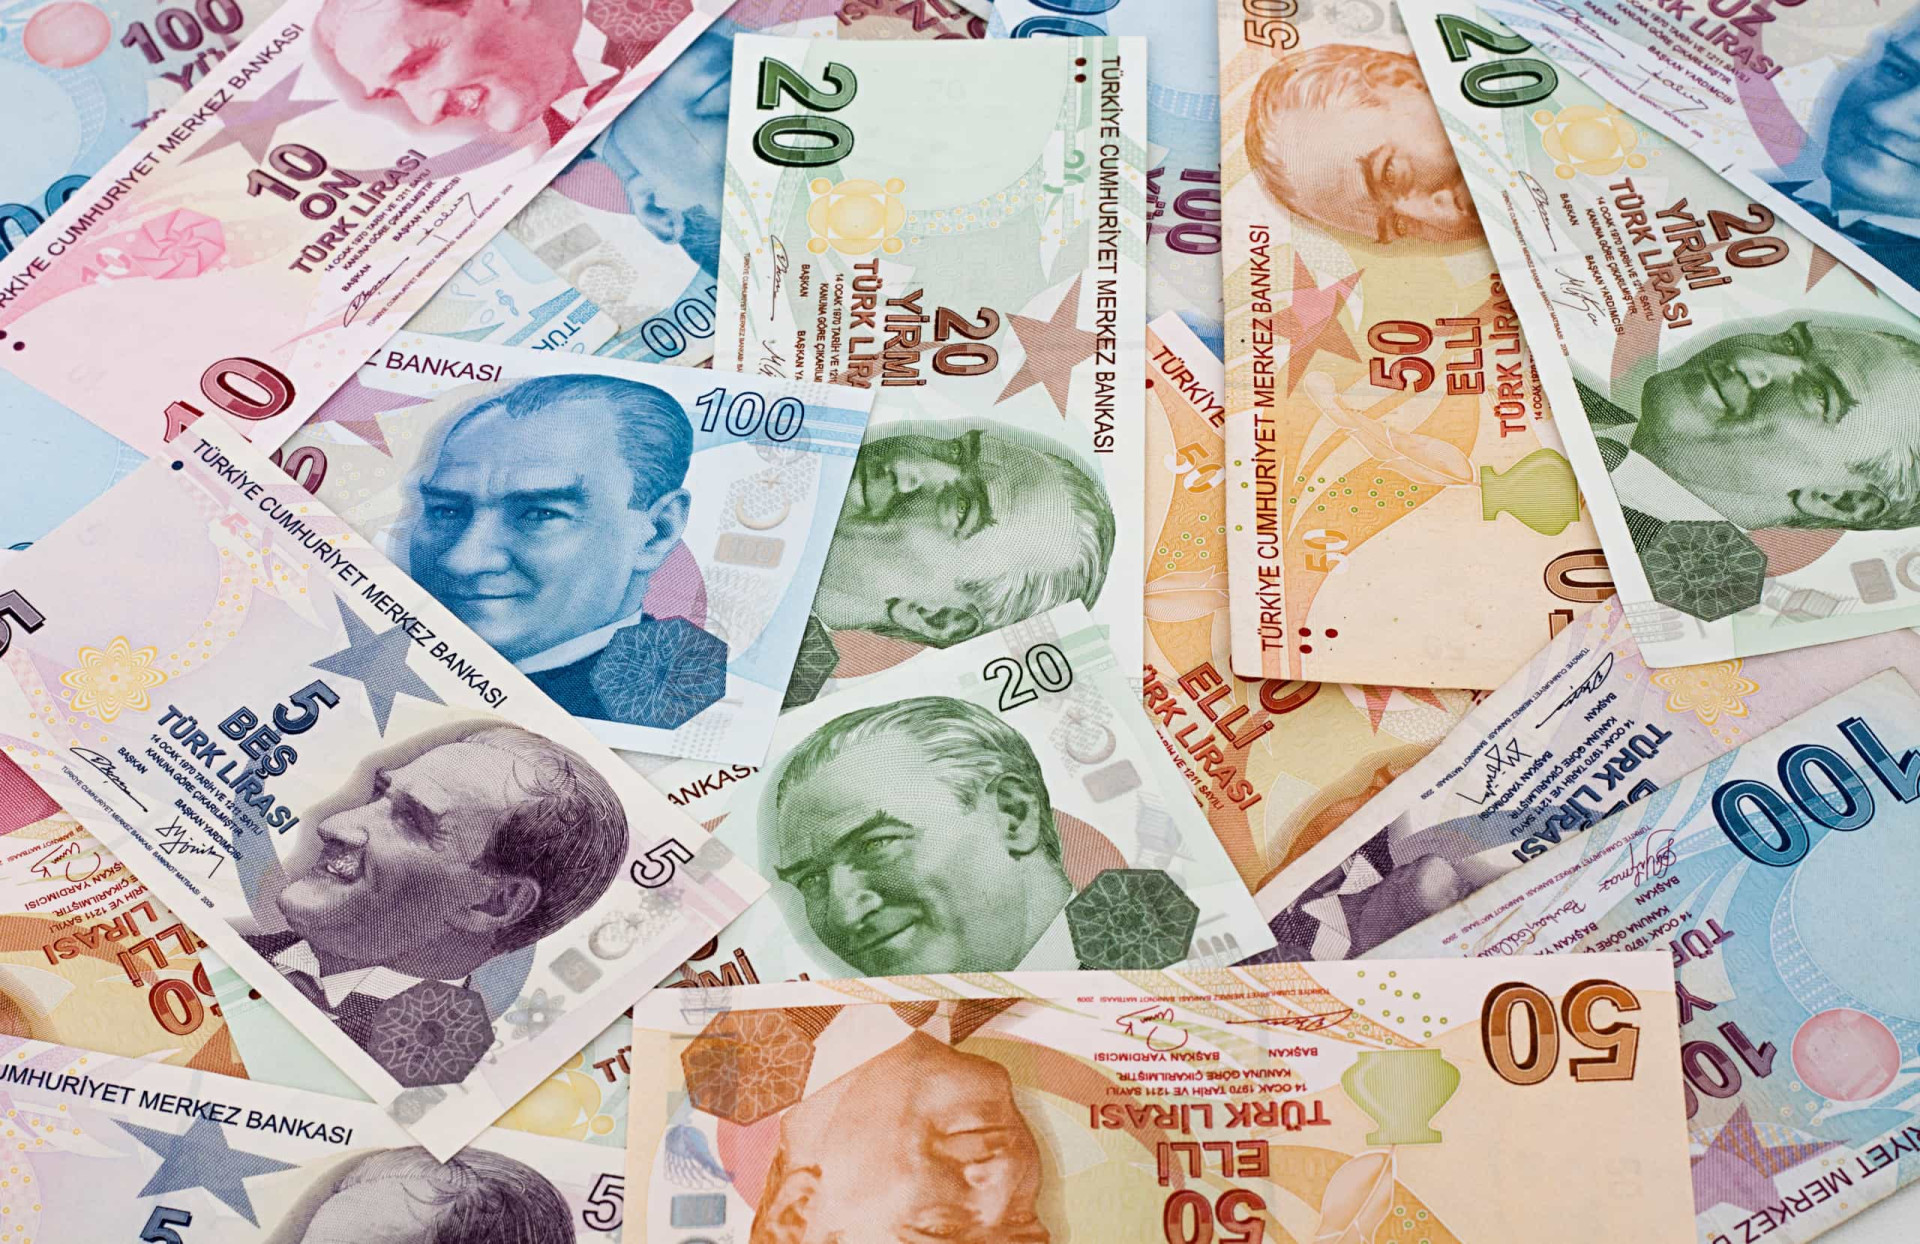 <p><span>La </span>Livre turque est la monnaie officielle du pays. Les billets portent le portrait de Kemal Atatürk (fondateur et premier président du pays) sur une face, et une combinaison de célébrités historiques turques et de symboles sur l'autre face.</p><p><a href="https://www.msn.com/fr-fr/community/channel/vid-7xx8mnucu55yw63we9va2gwr7uihbxwc68fxqp25x6tg4ftibpra?cvid=94631541bc0f4f89bfd59158d696ad7e">Suivez-nous et accédez tous les jours à du contenu exclusif</a></p>